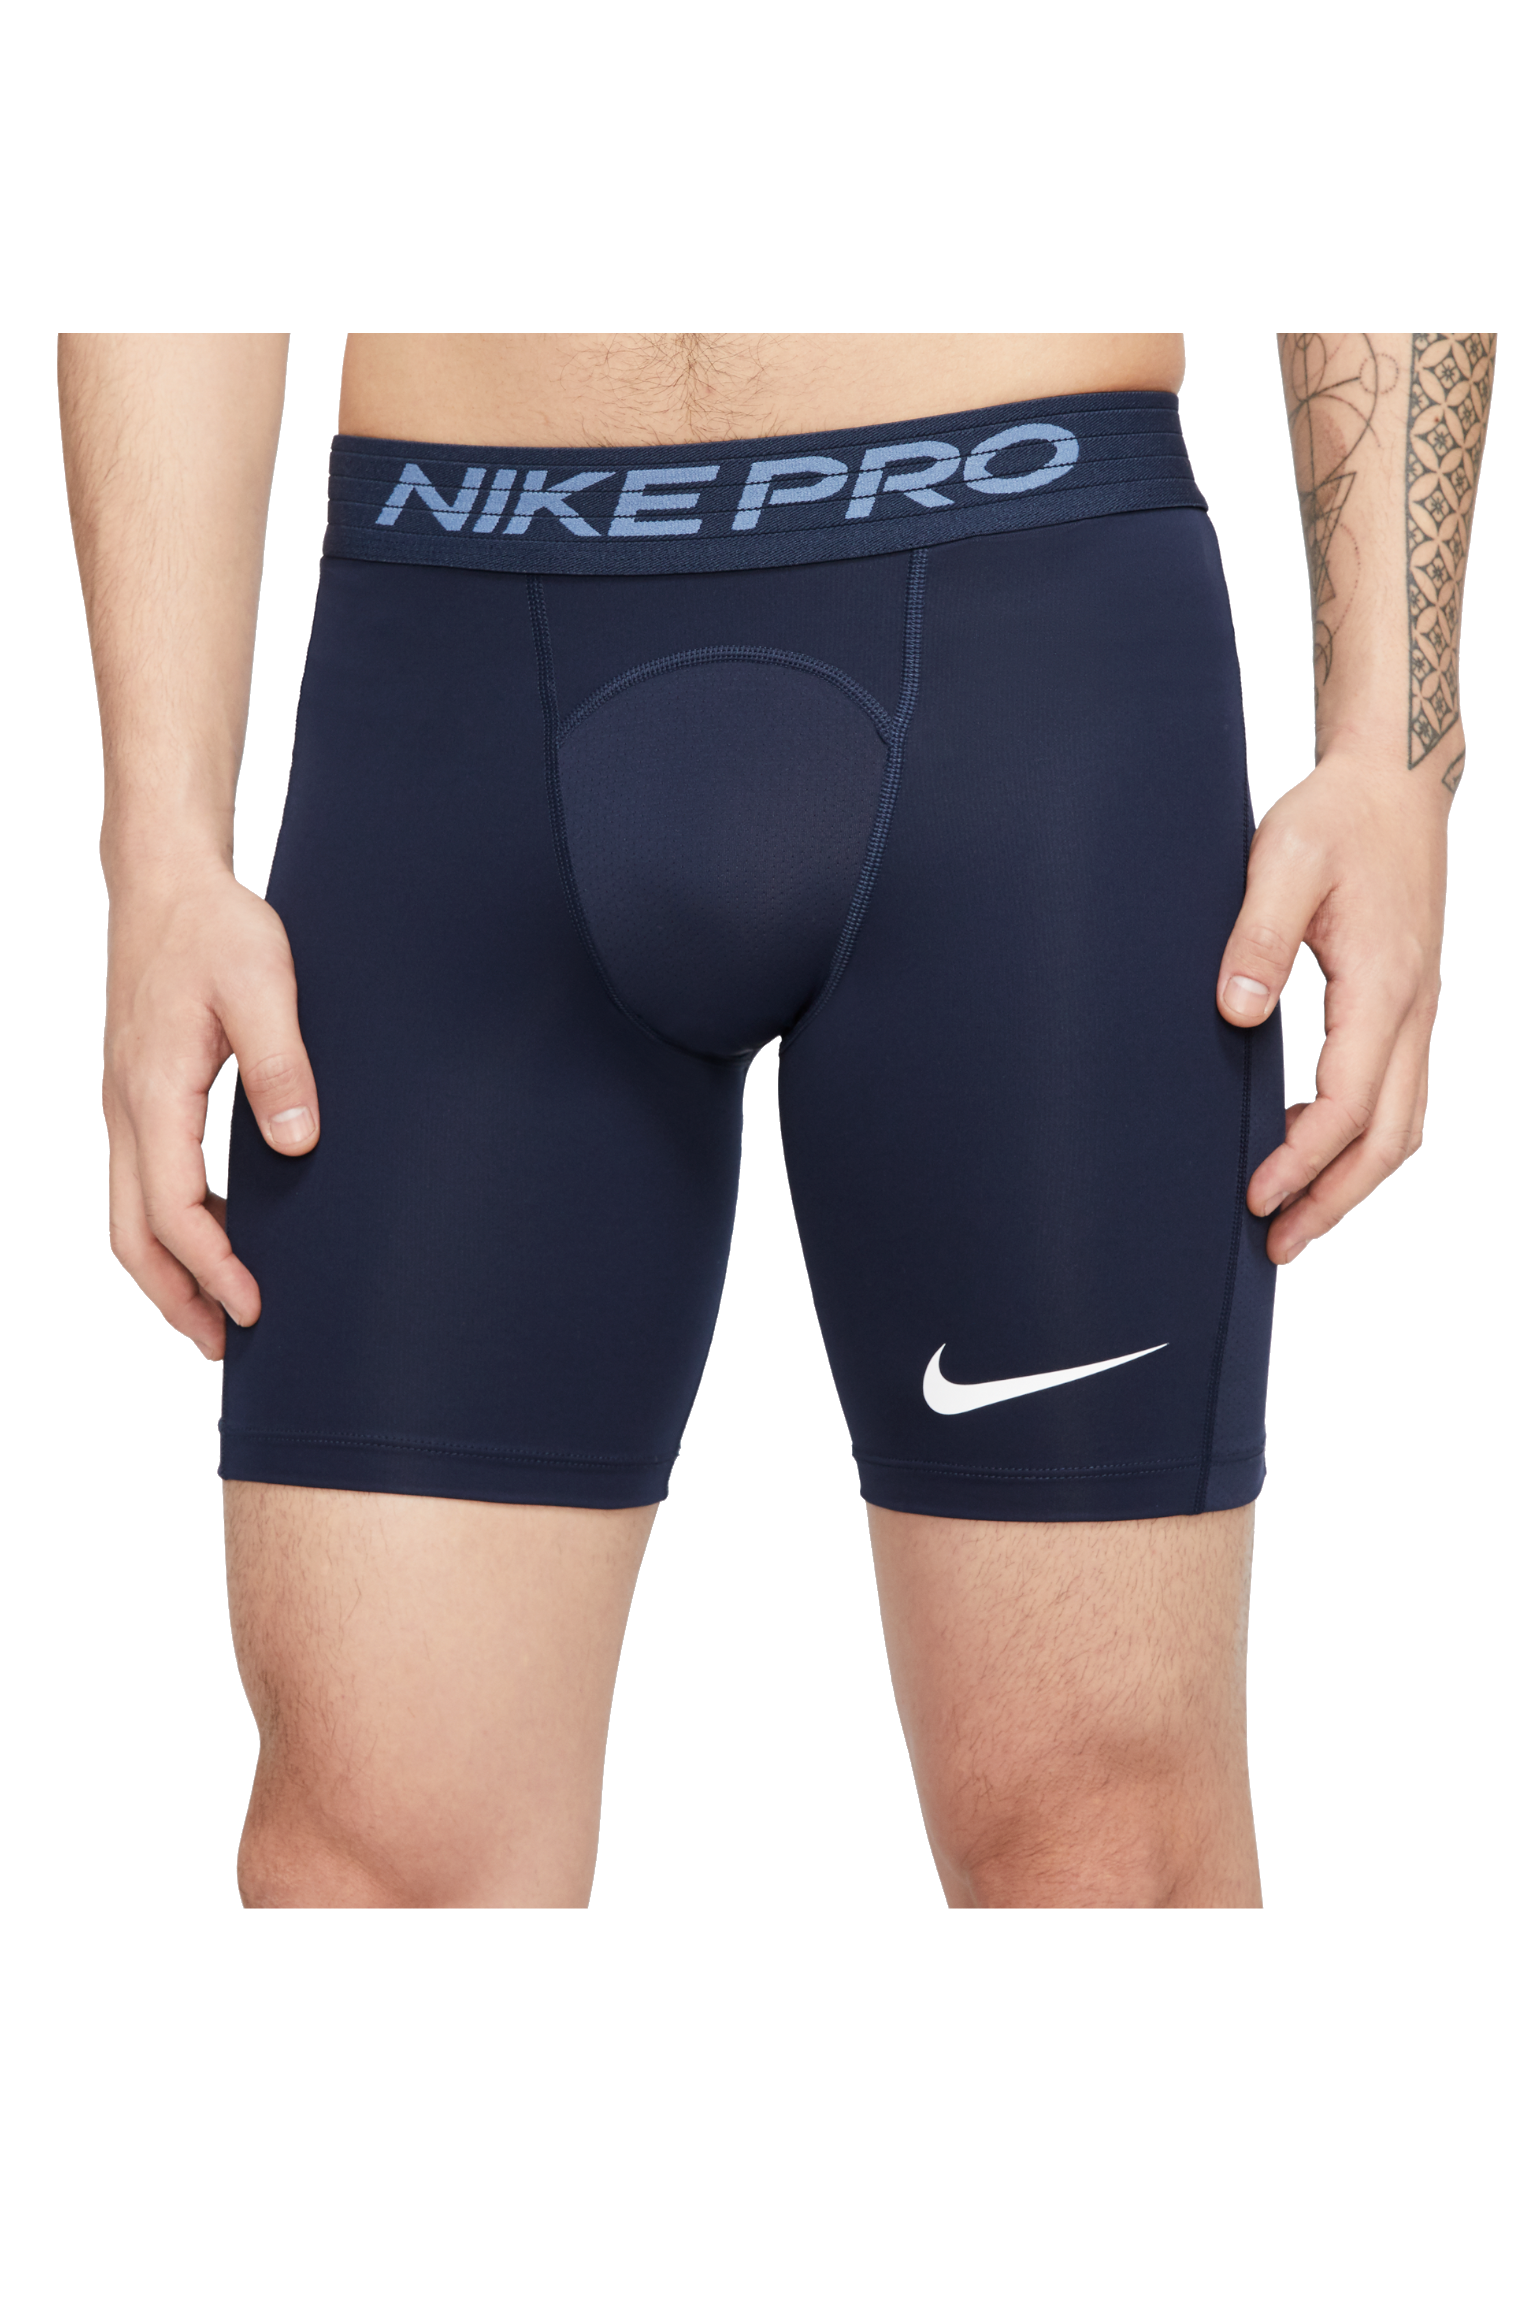 nike pro short shorts